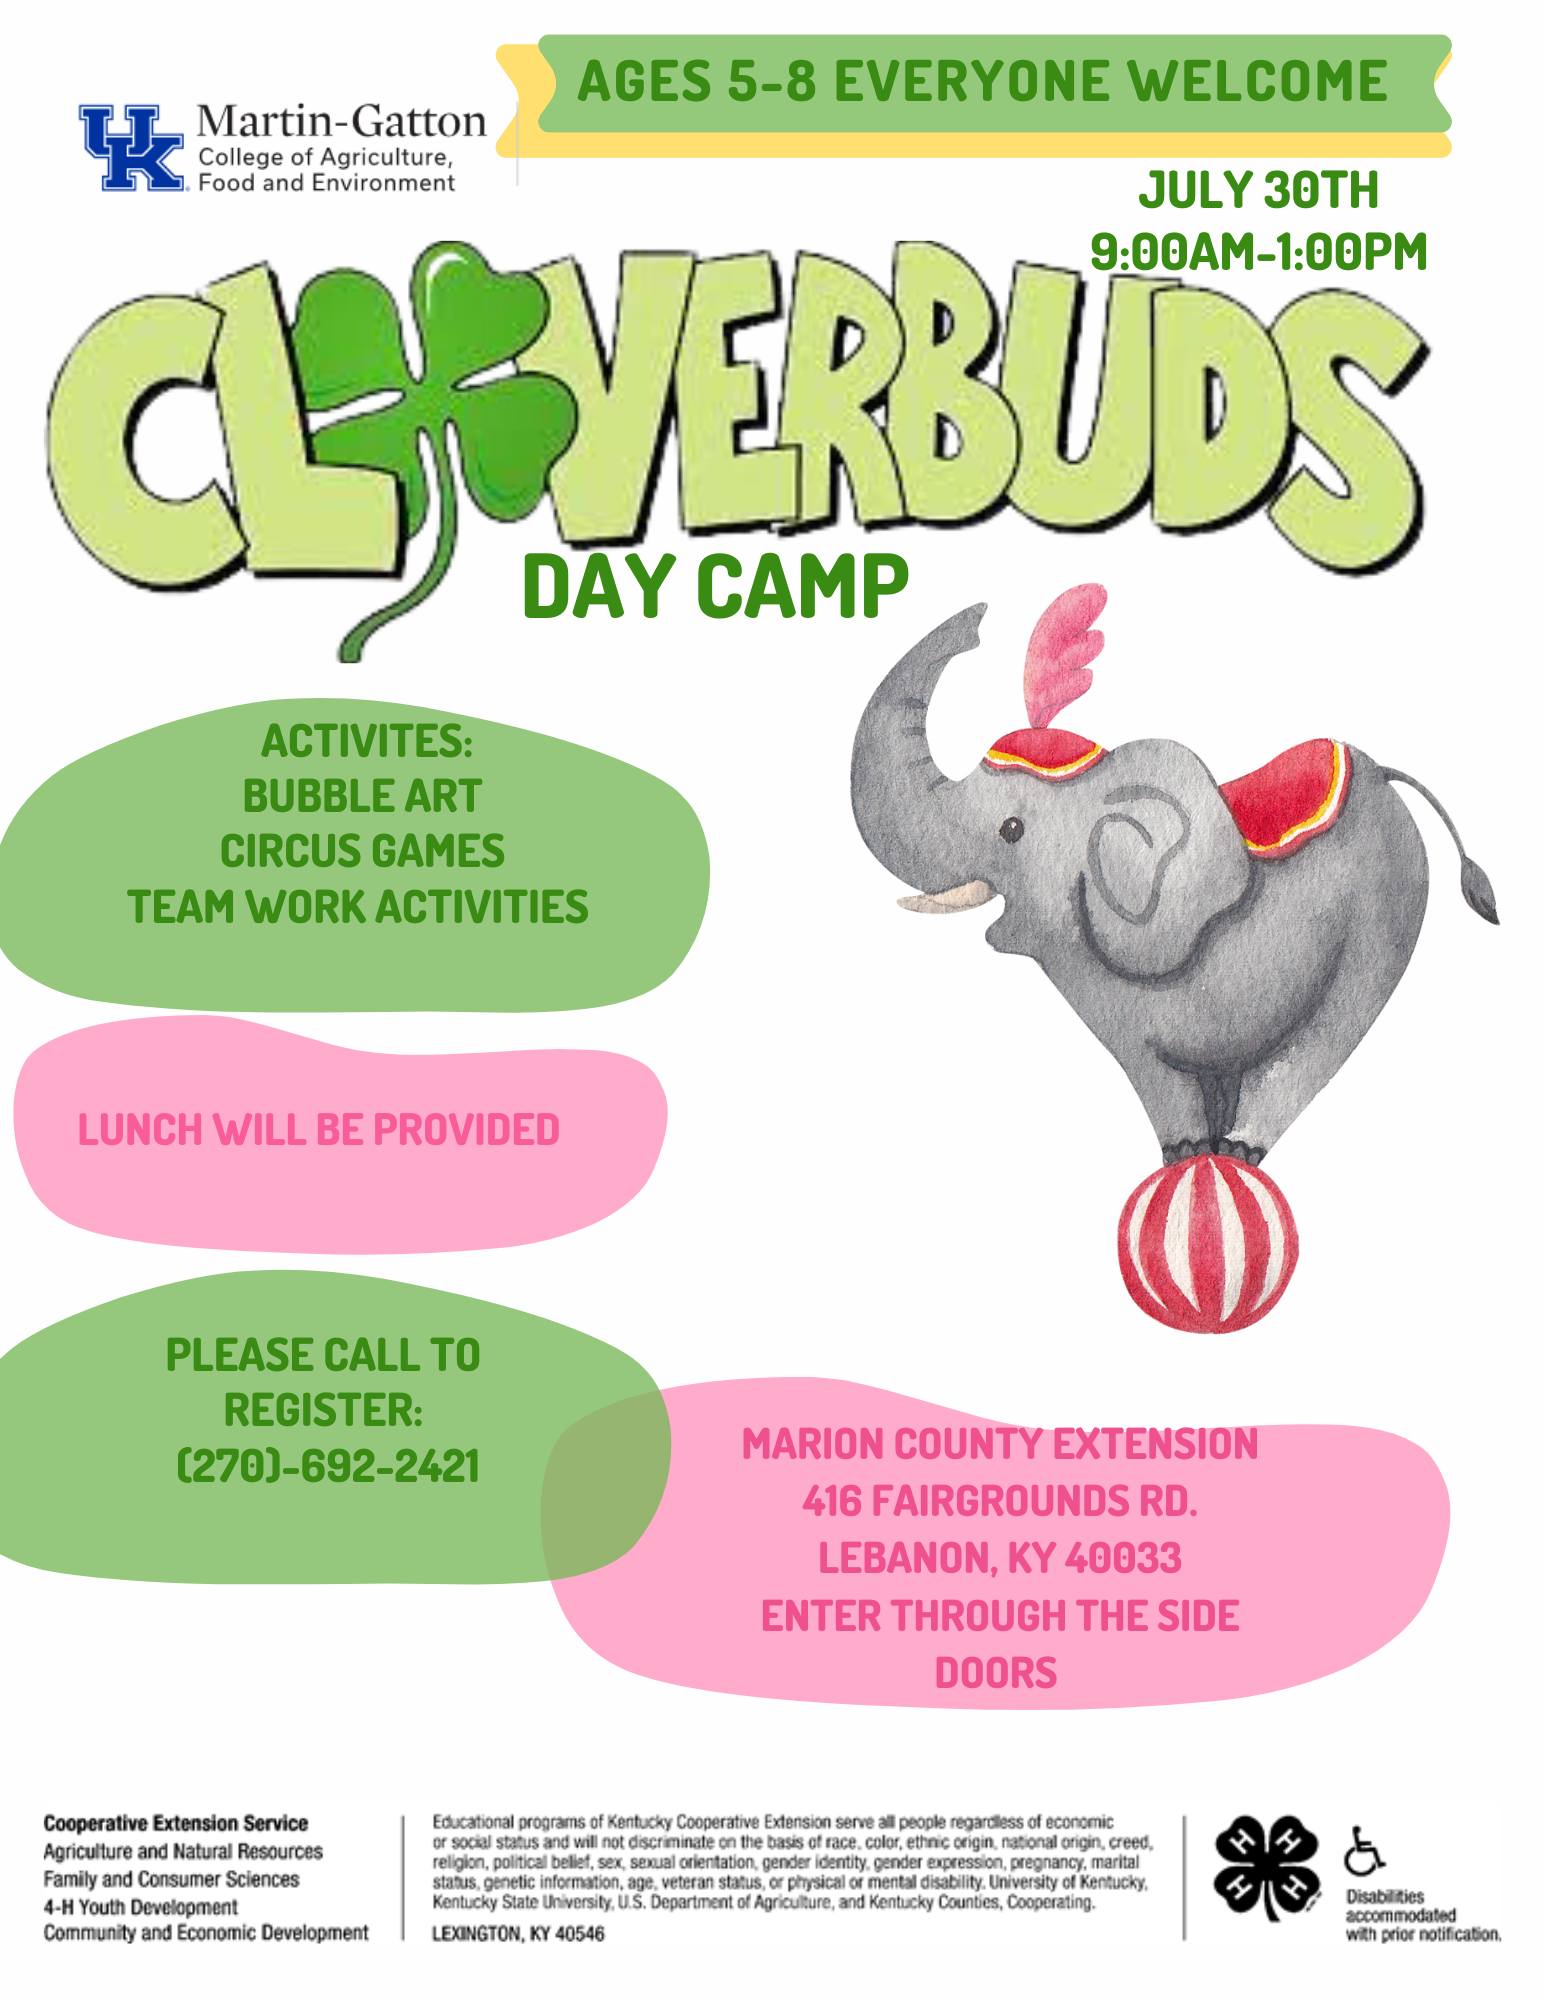 Cloverbuds Circus